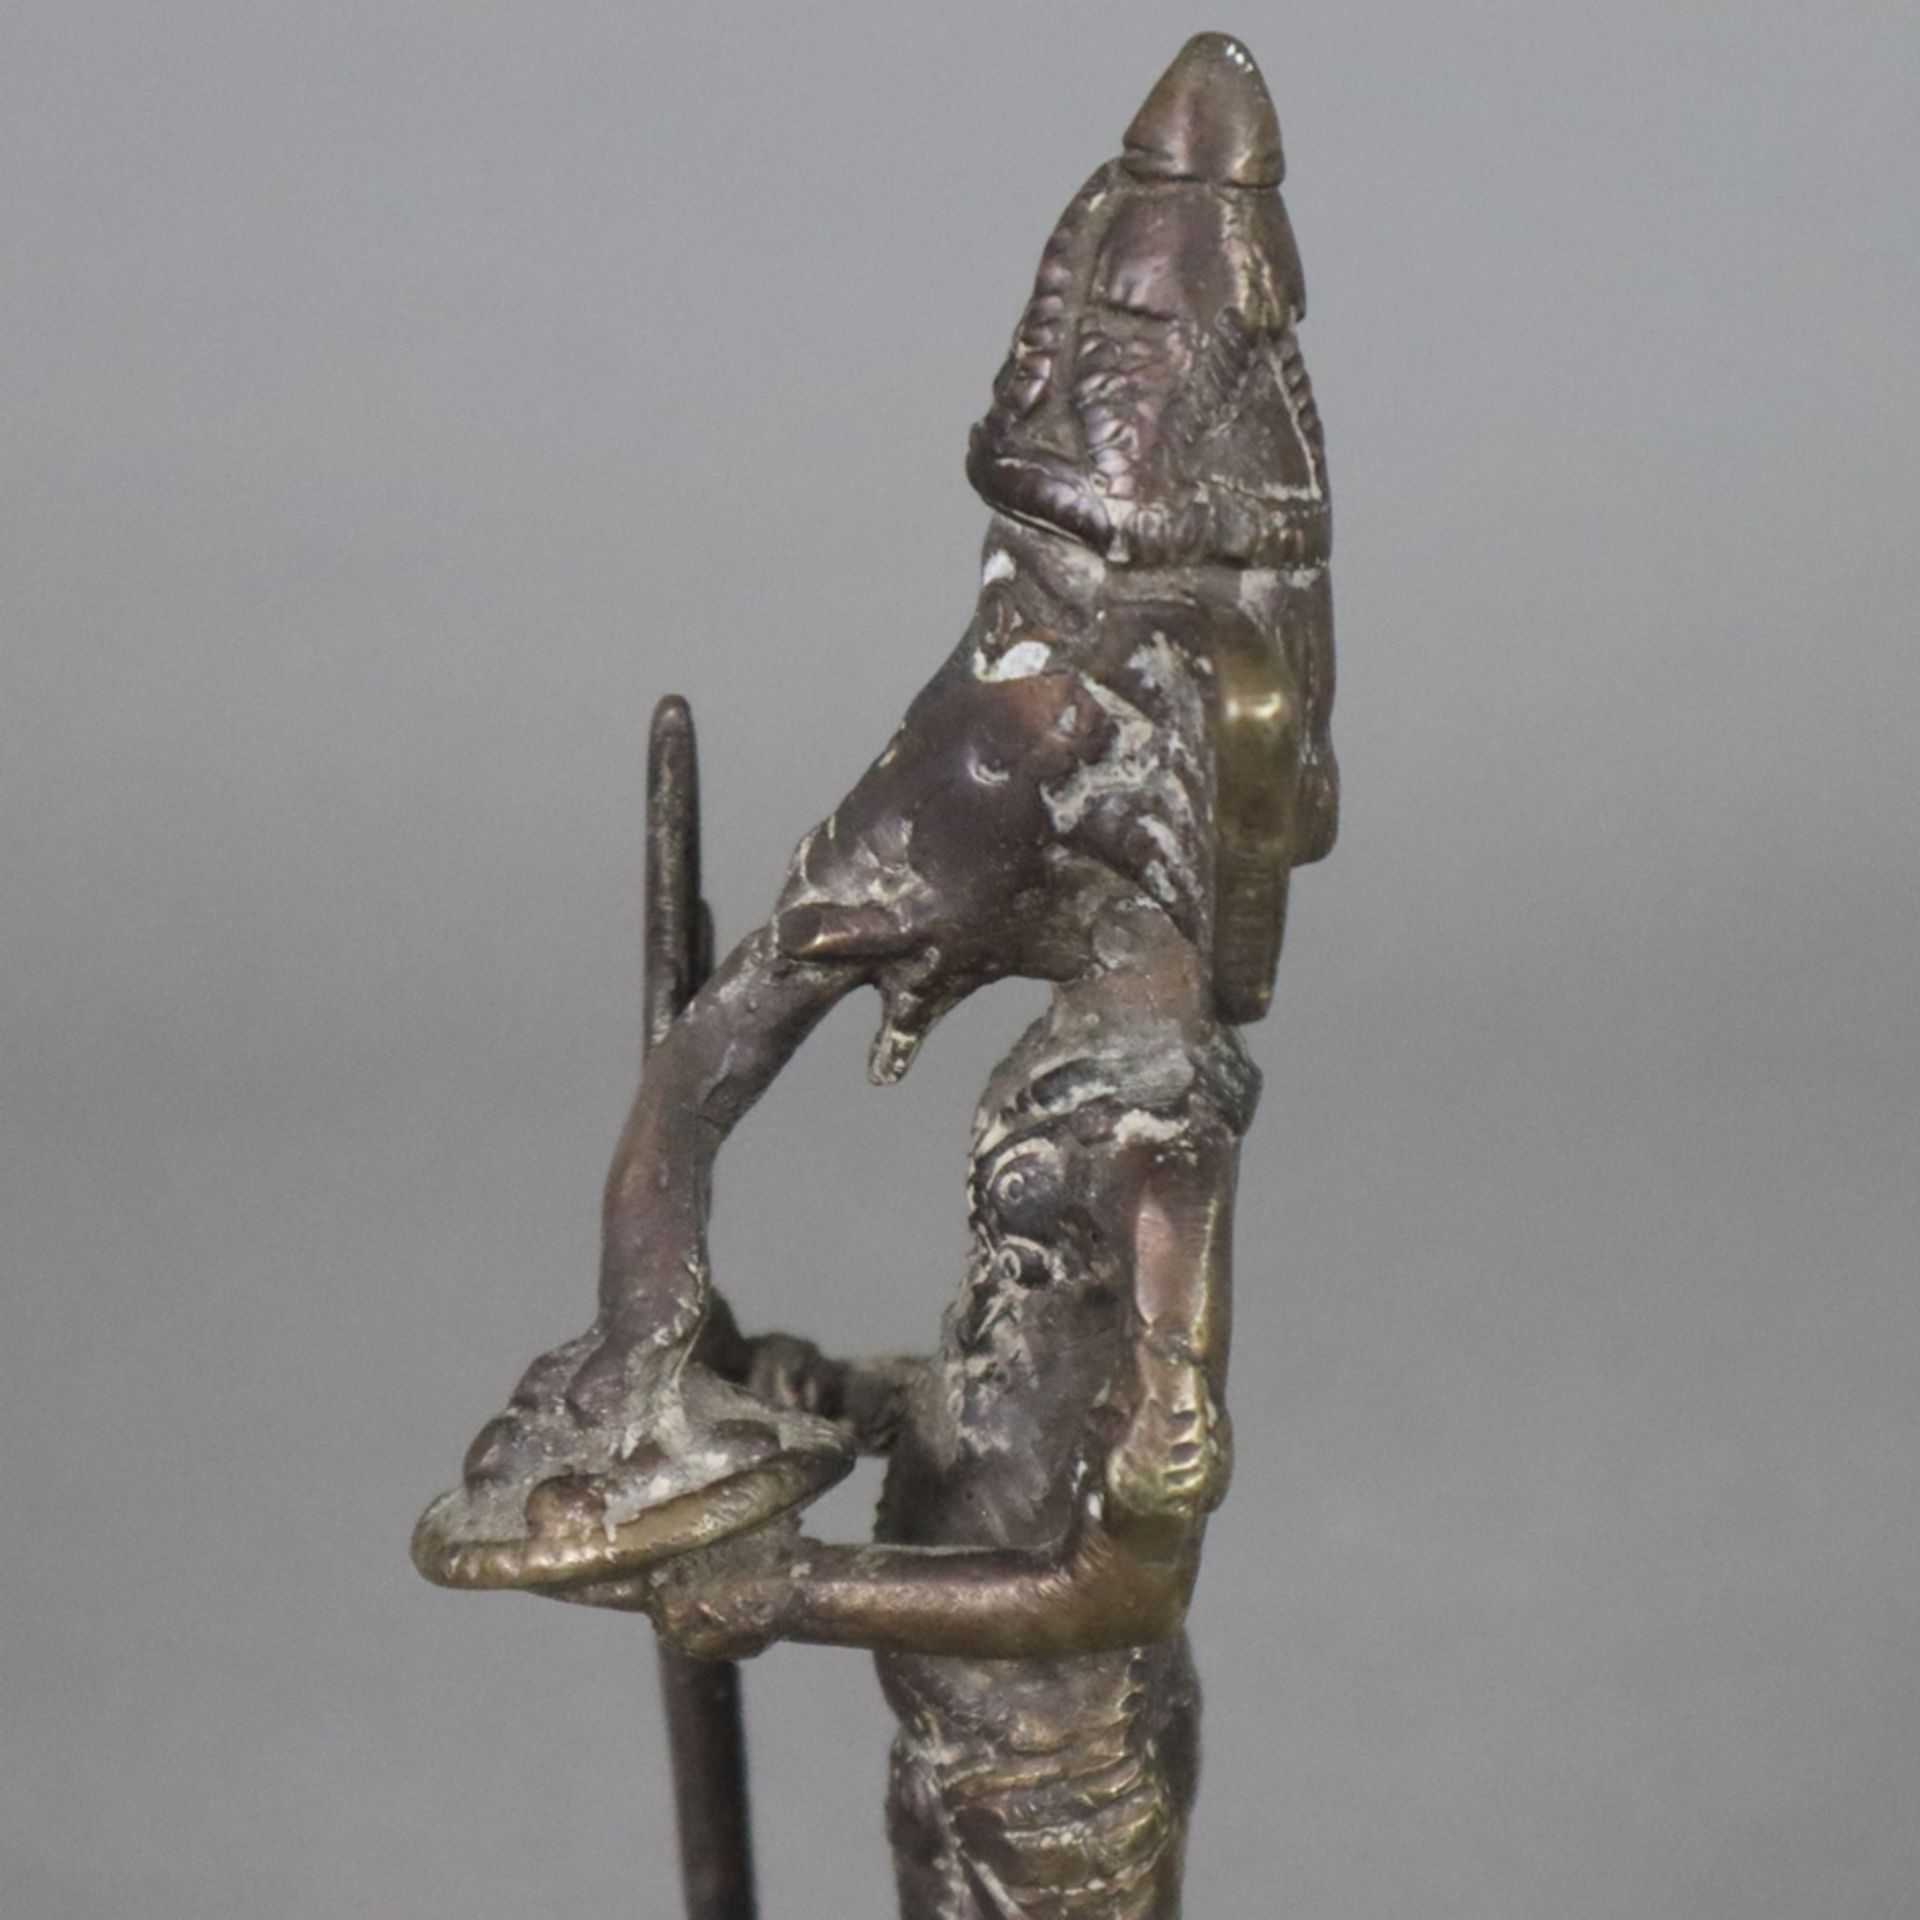 Elefantengott Ganesha - wohl Tibet/Nepal, Bronze, braun patiniert, stehende Darstellung mit Zepter  - Bild 5 aus 7